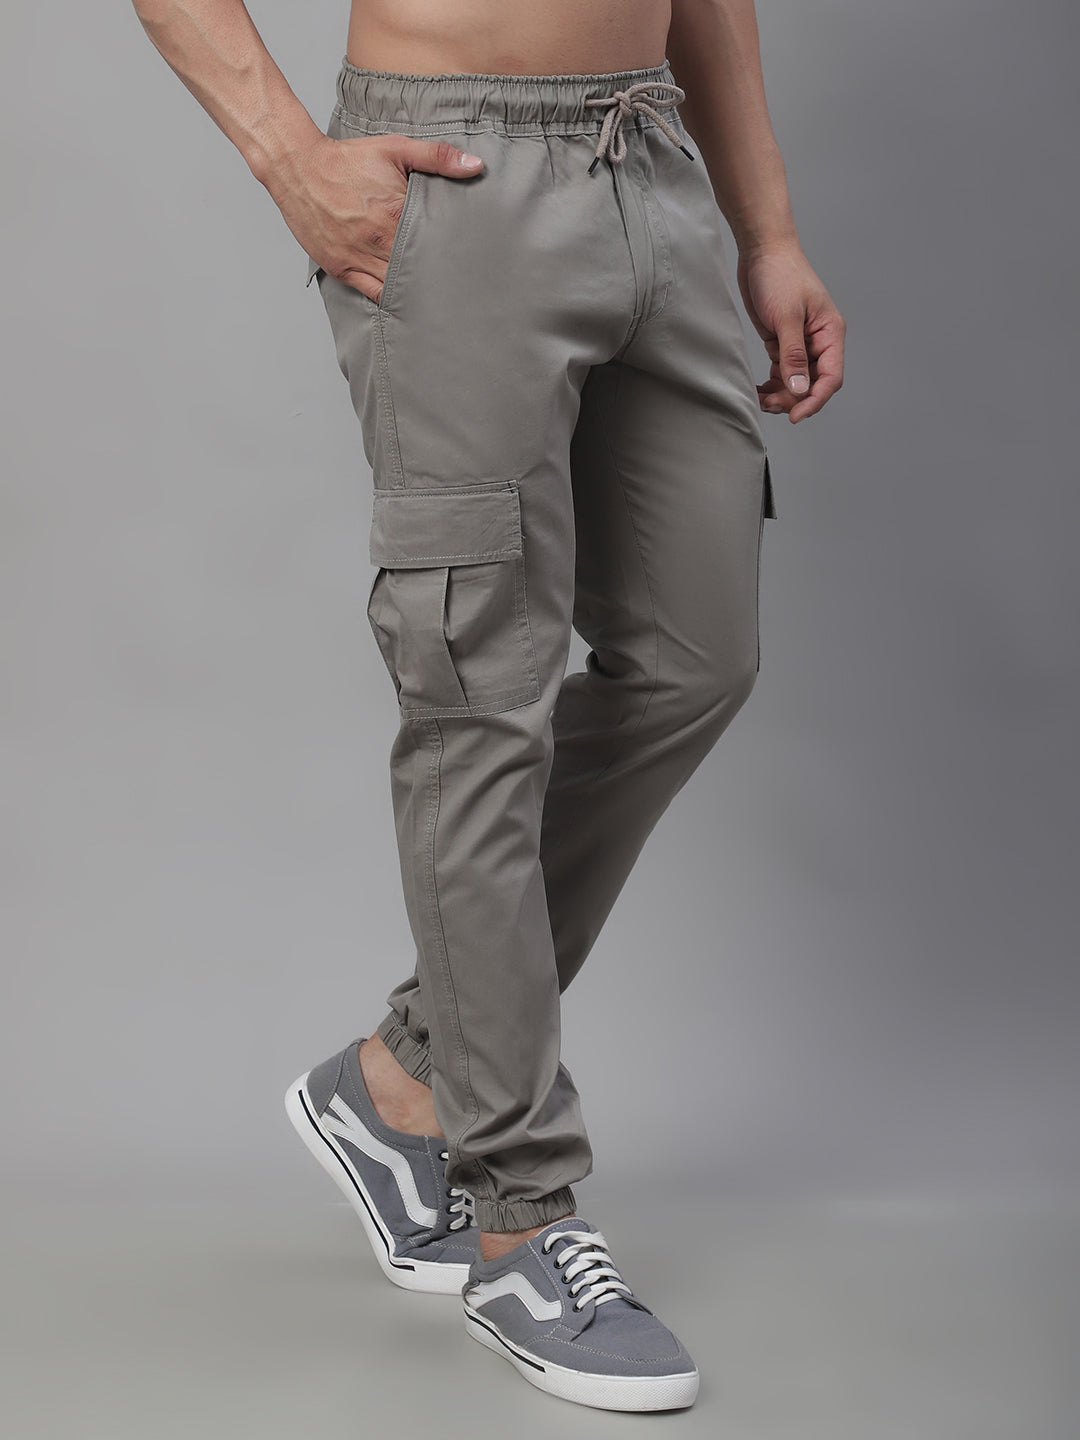 Jainish Men's Casual Cotton Solid Cargo Pants - Light-Grey - Distacart